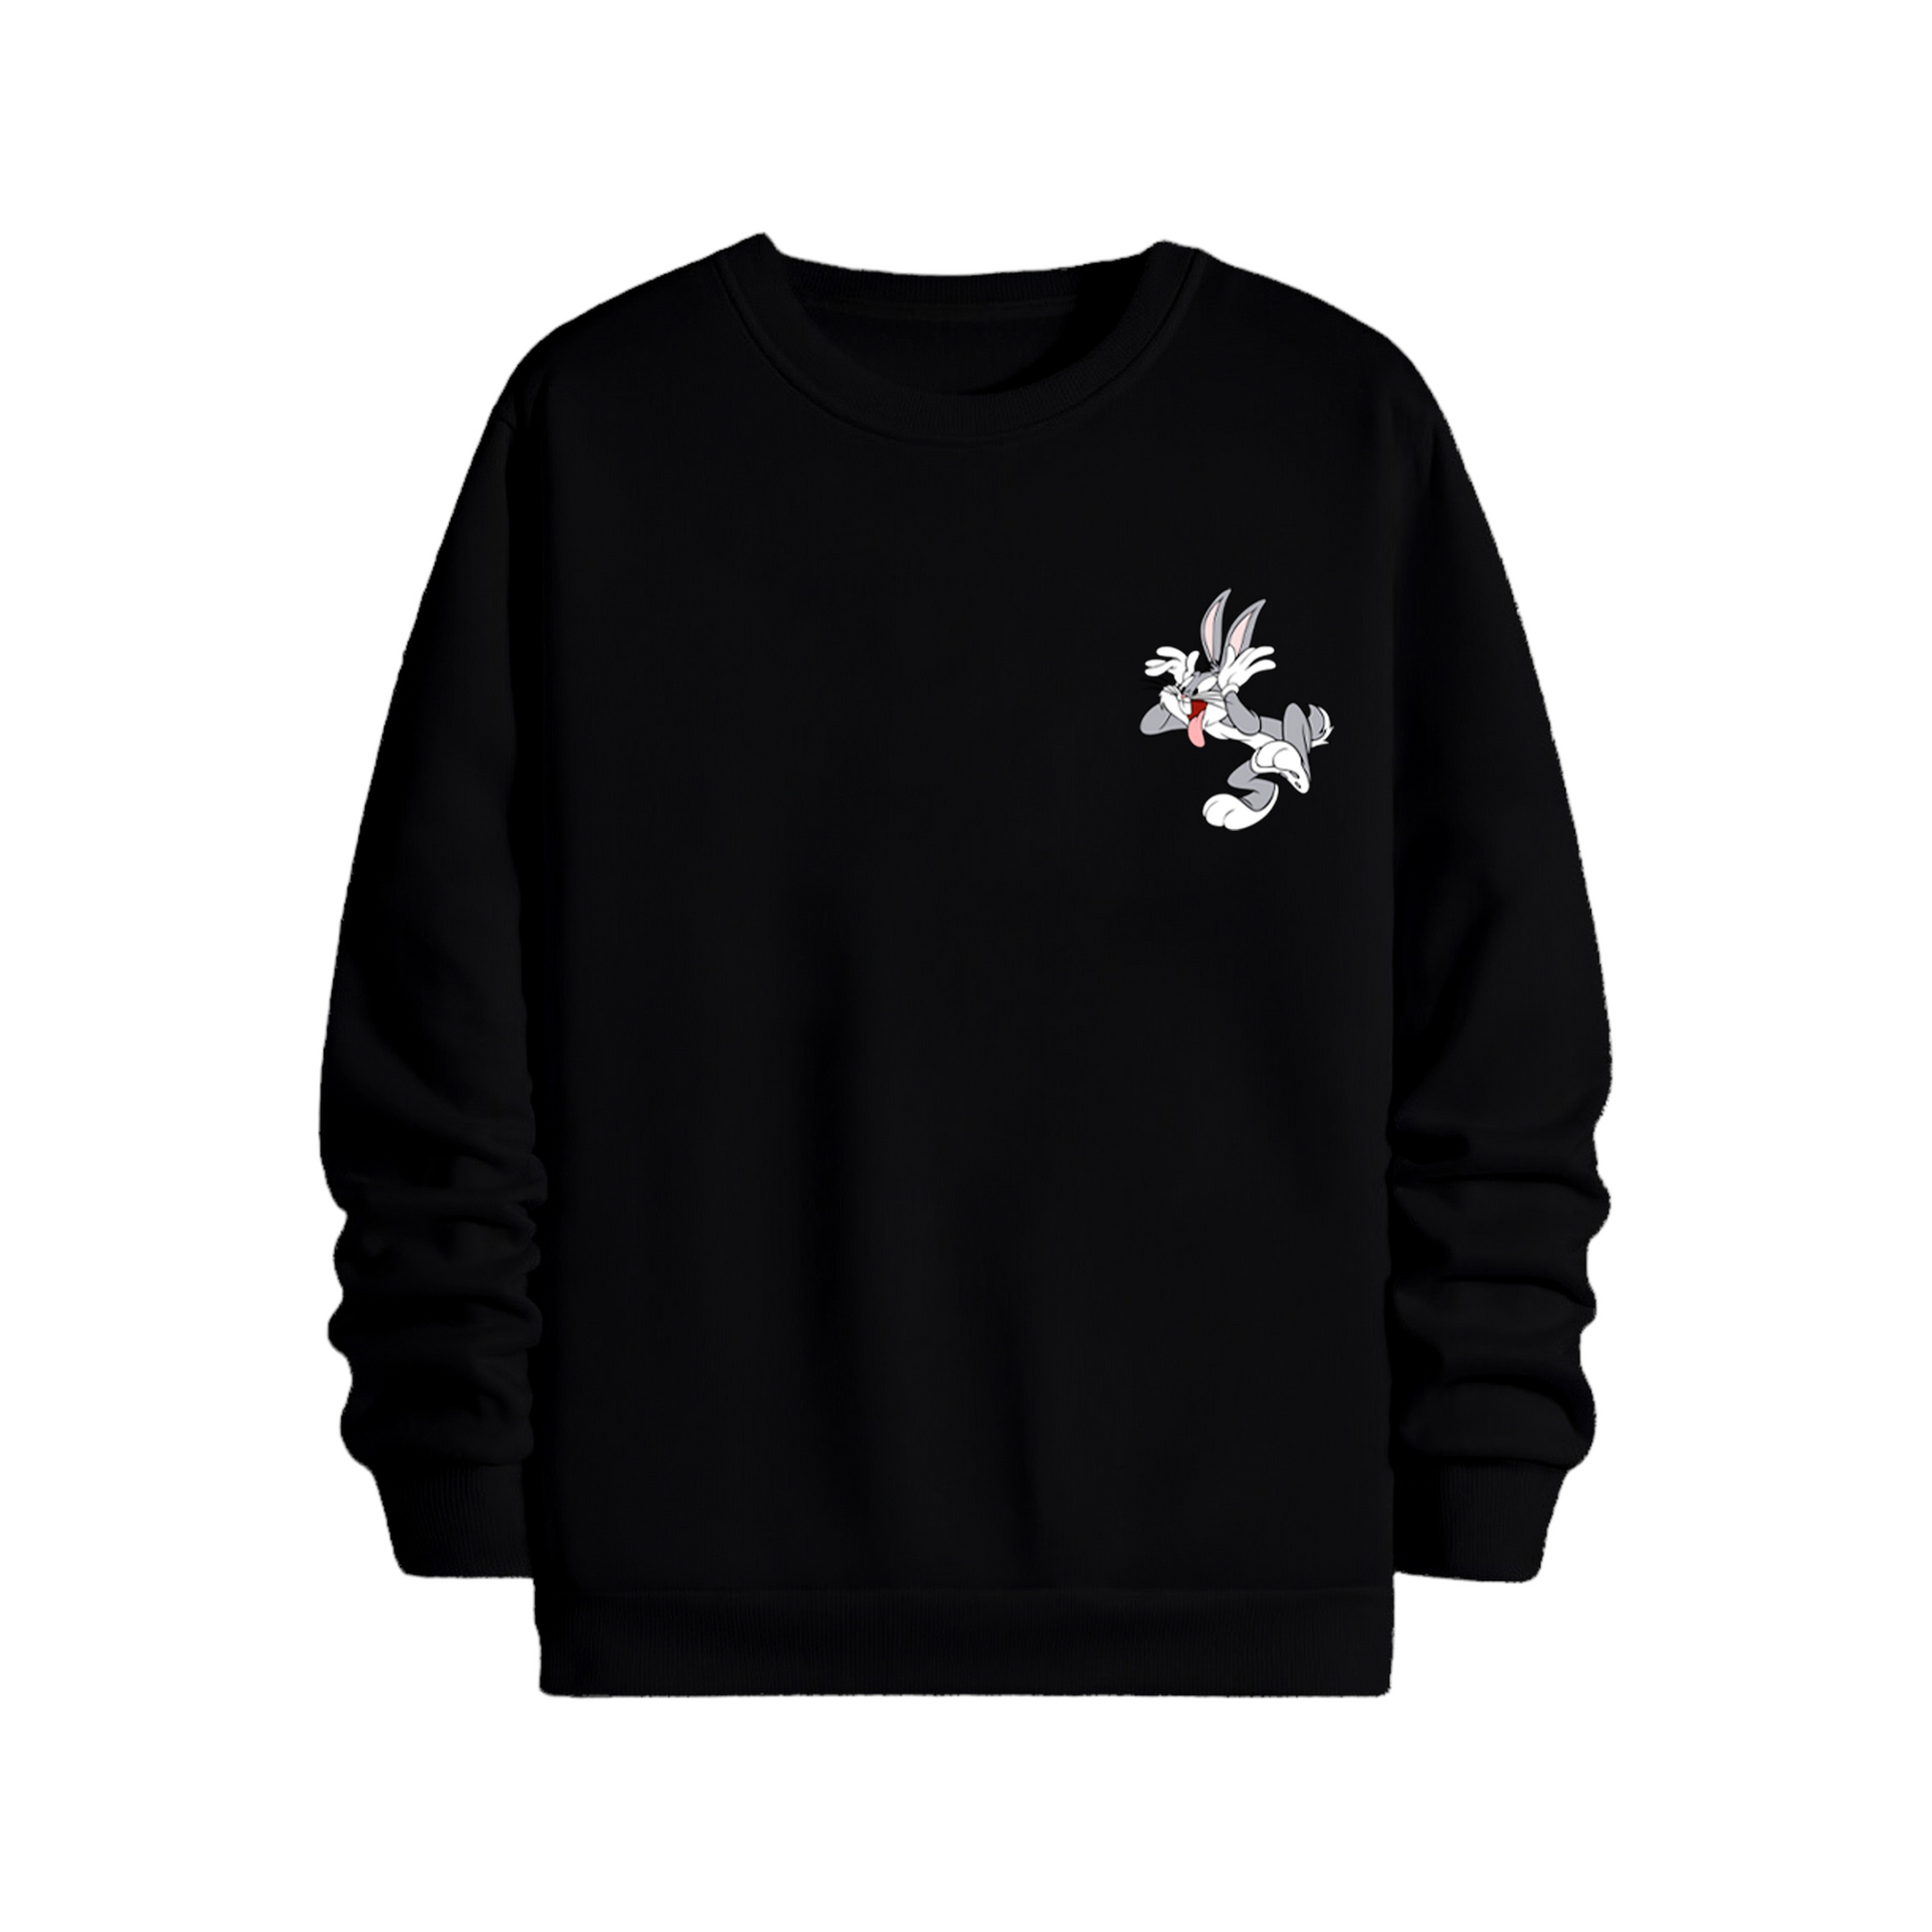 Bugs Bunny - Sweatshirt